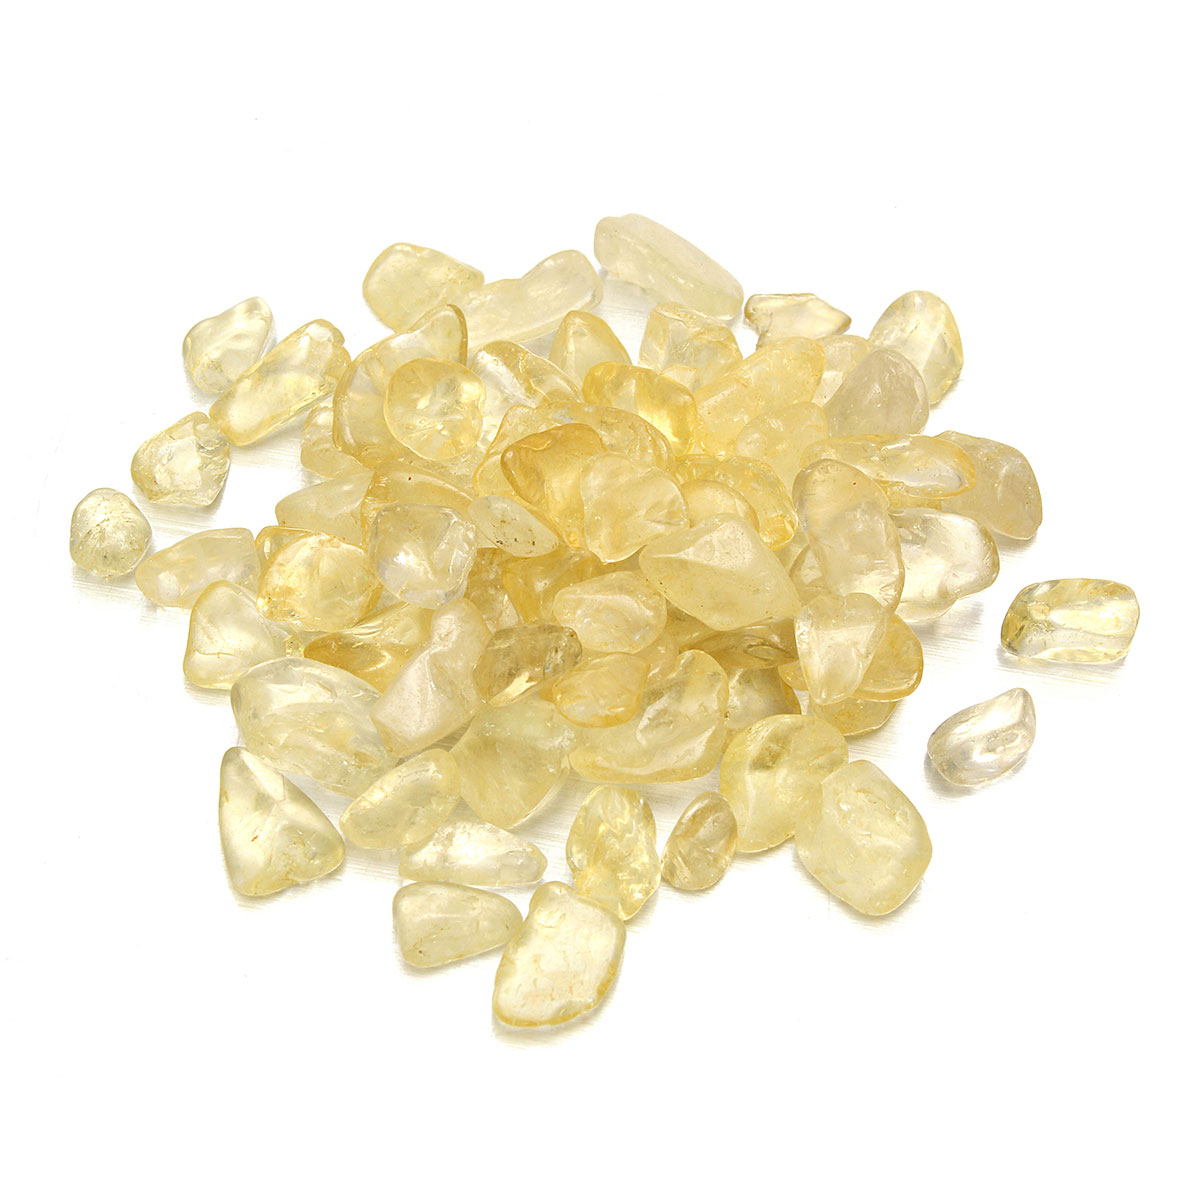 

100g естественный желтый цитрин находки кристаллический камень минерал образец ювелирных изделий полируется кварца